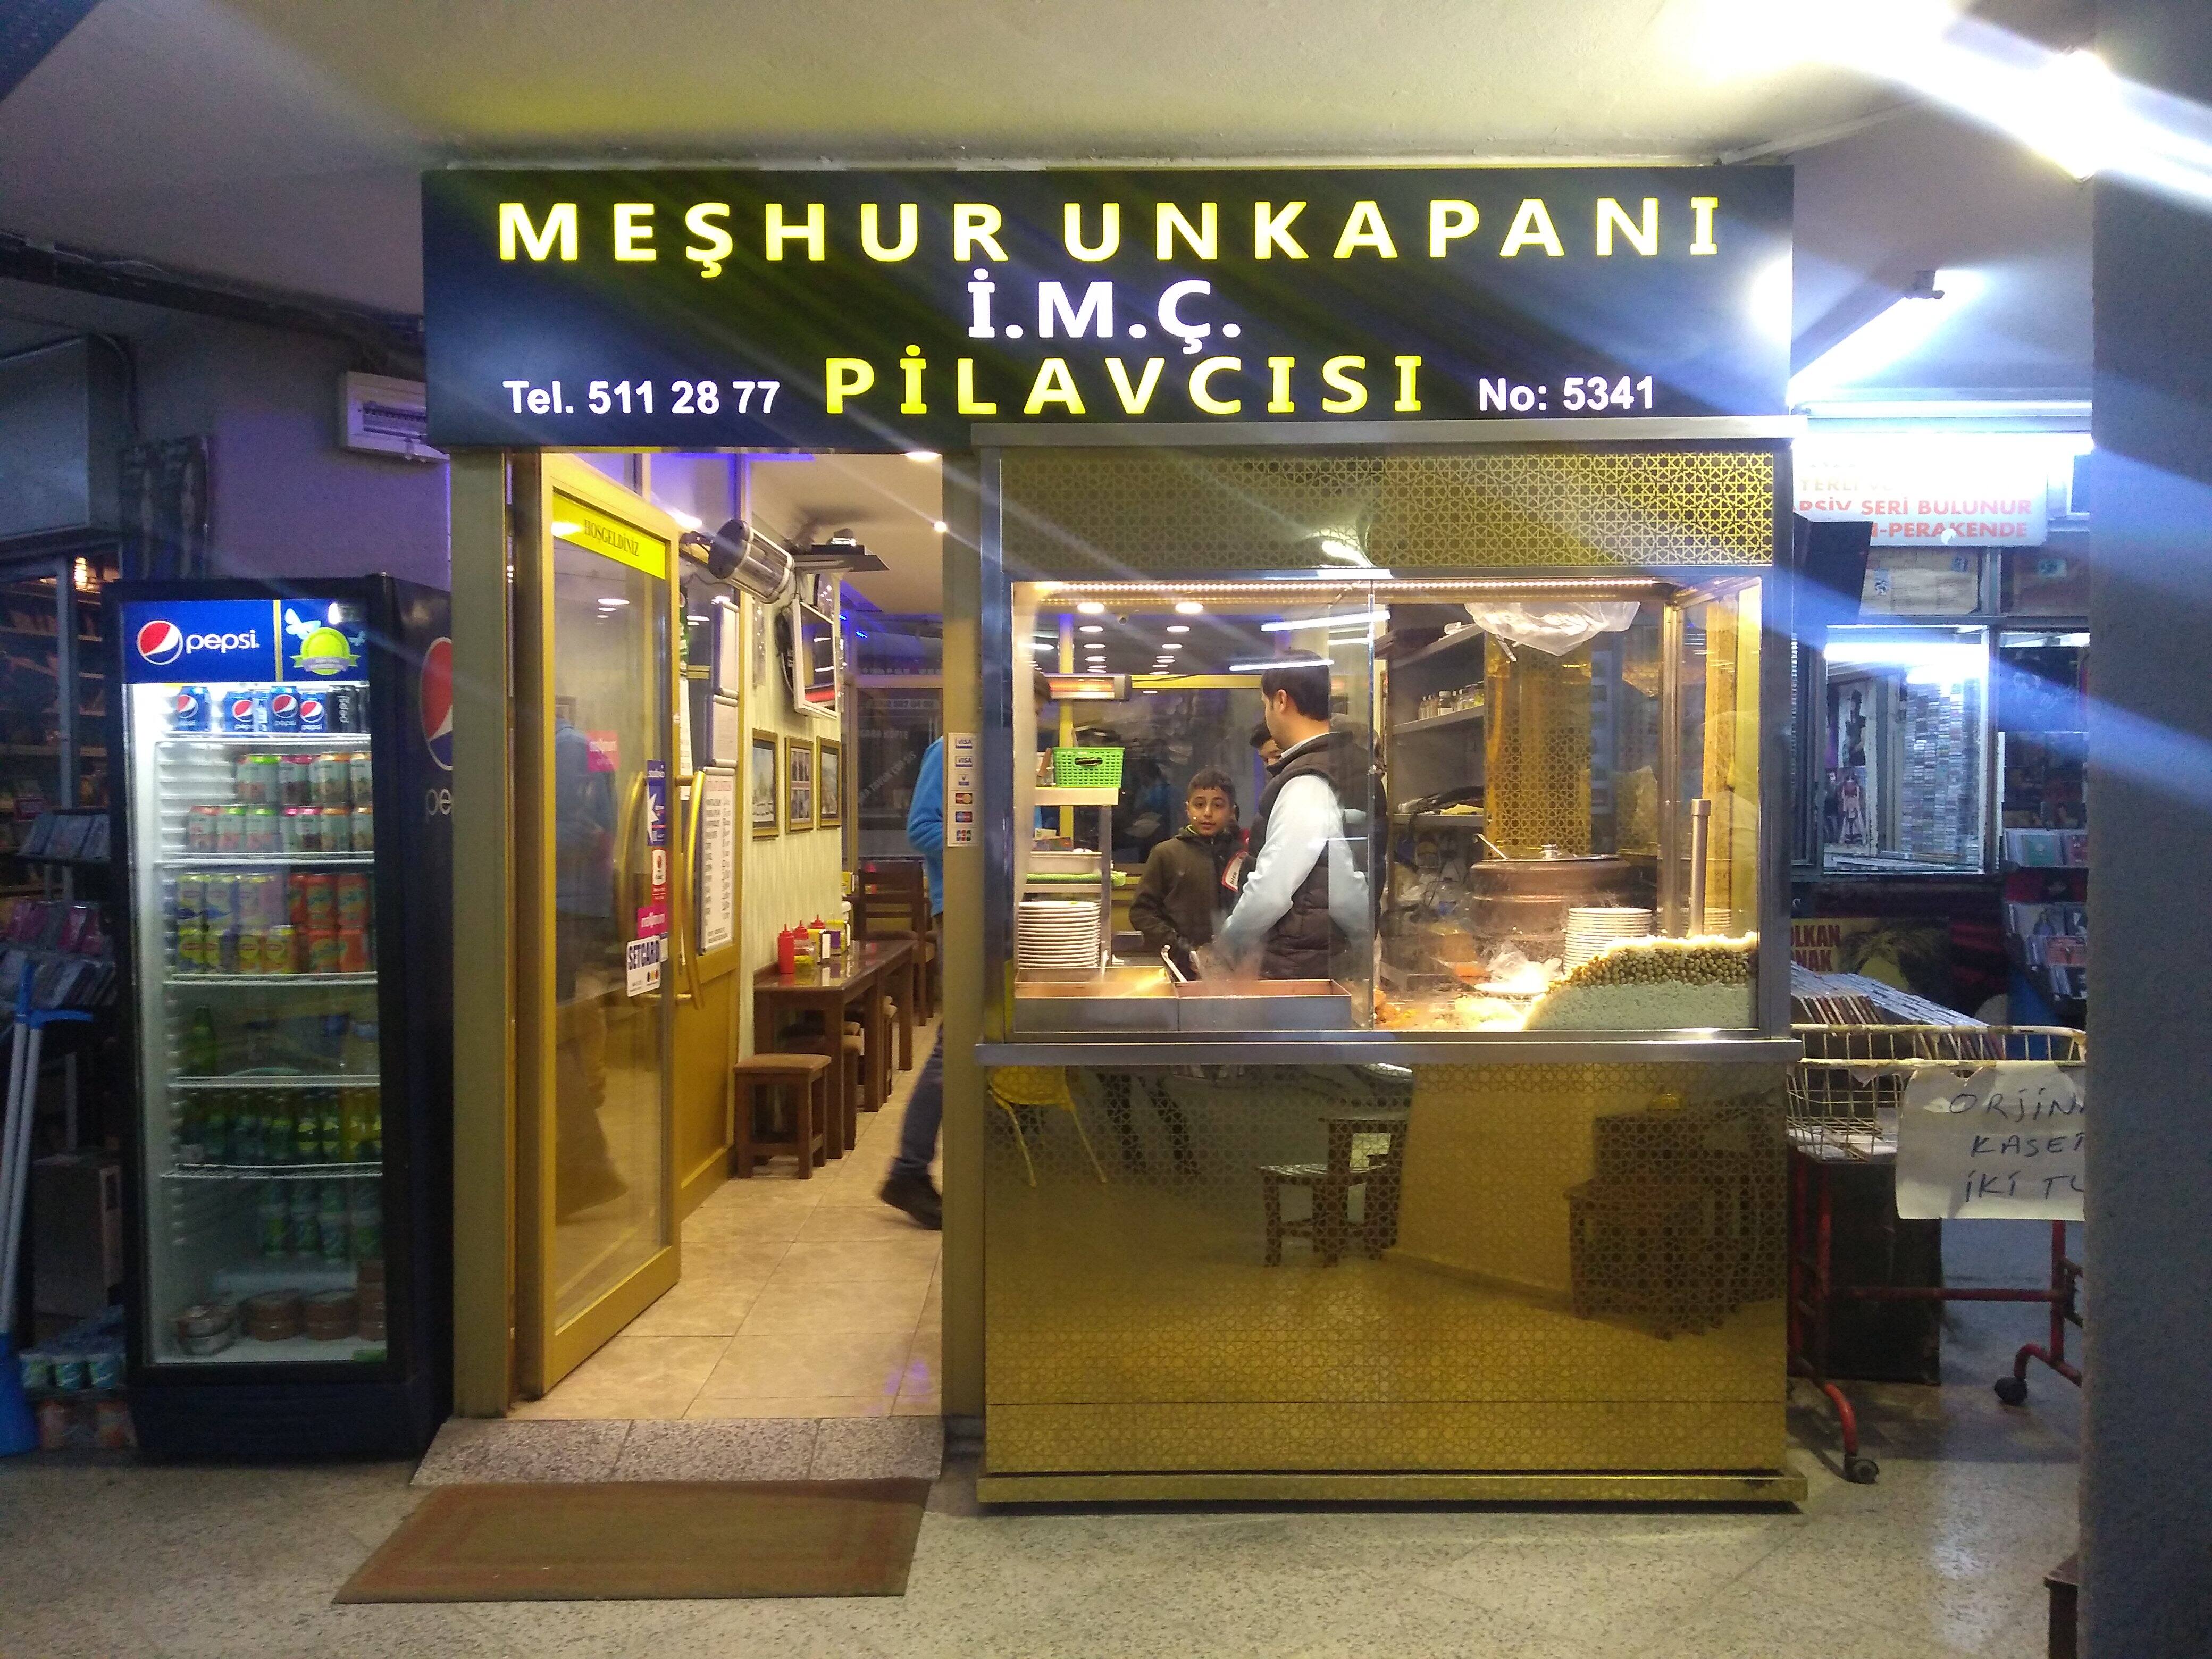 Meshur Unkapani I M C Pilavcisi Photos Pictures Of Meshur Unkapani I M C Pilavcisi Unkapani Istanbul